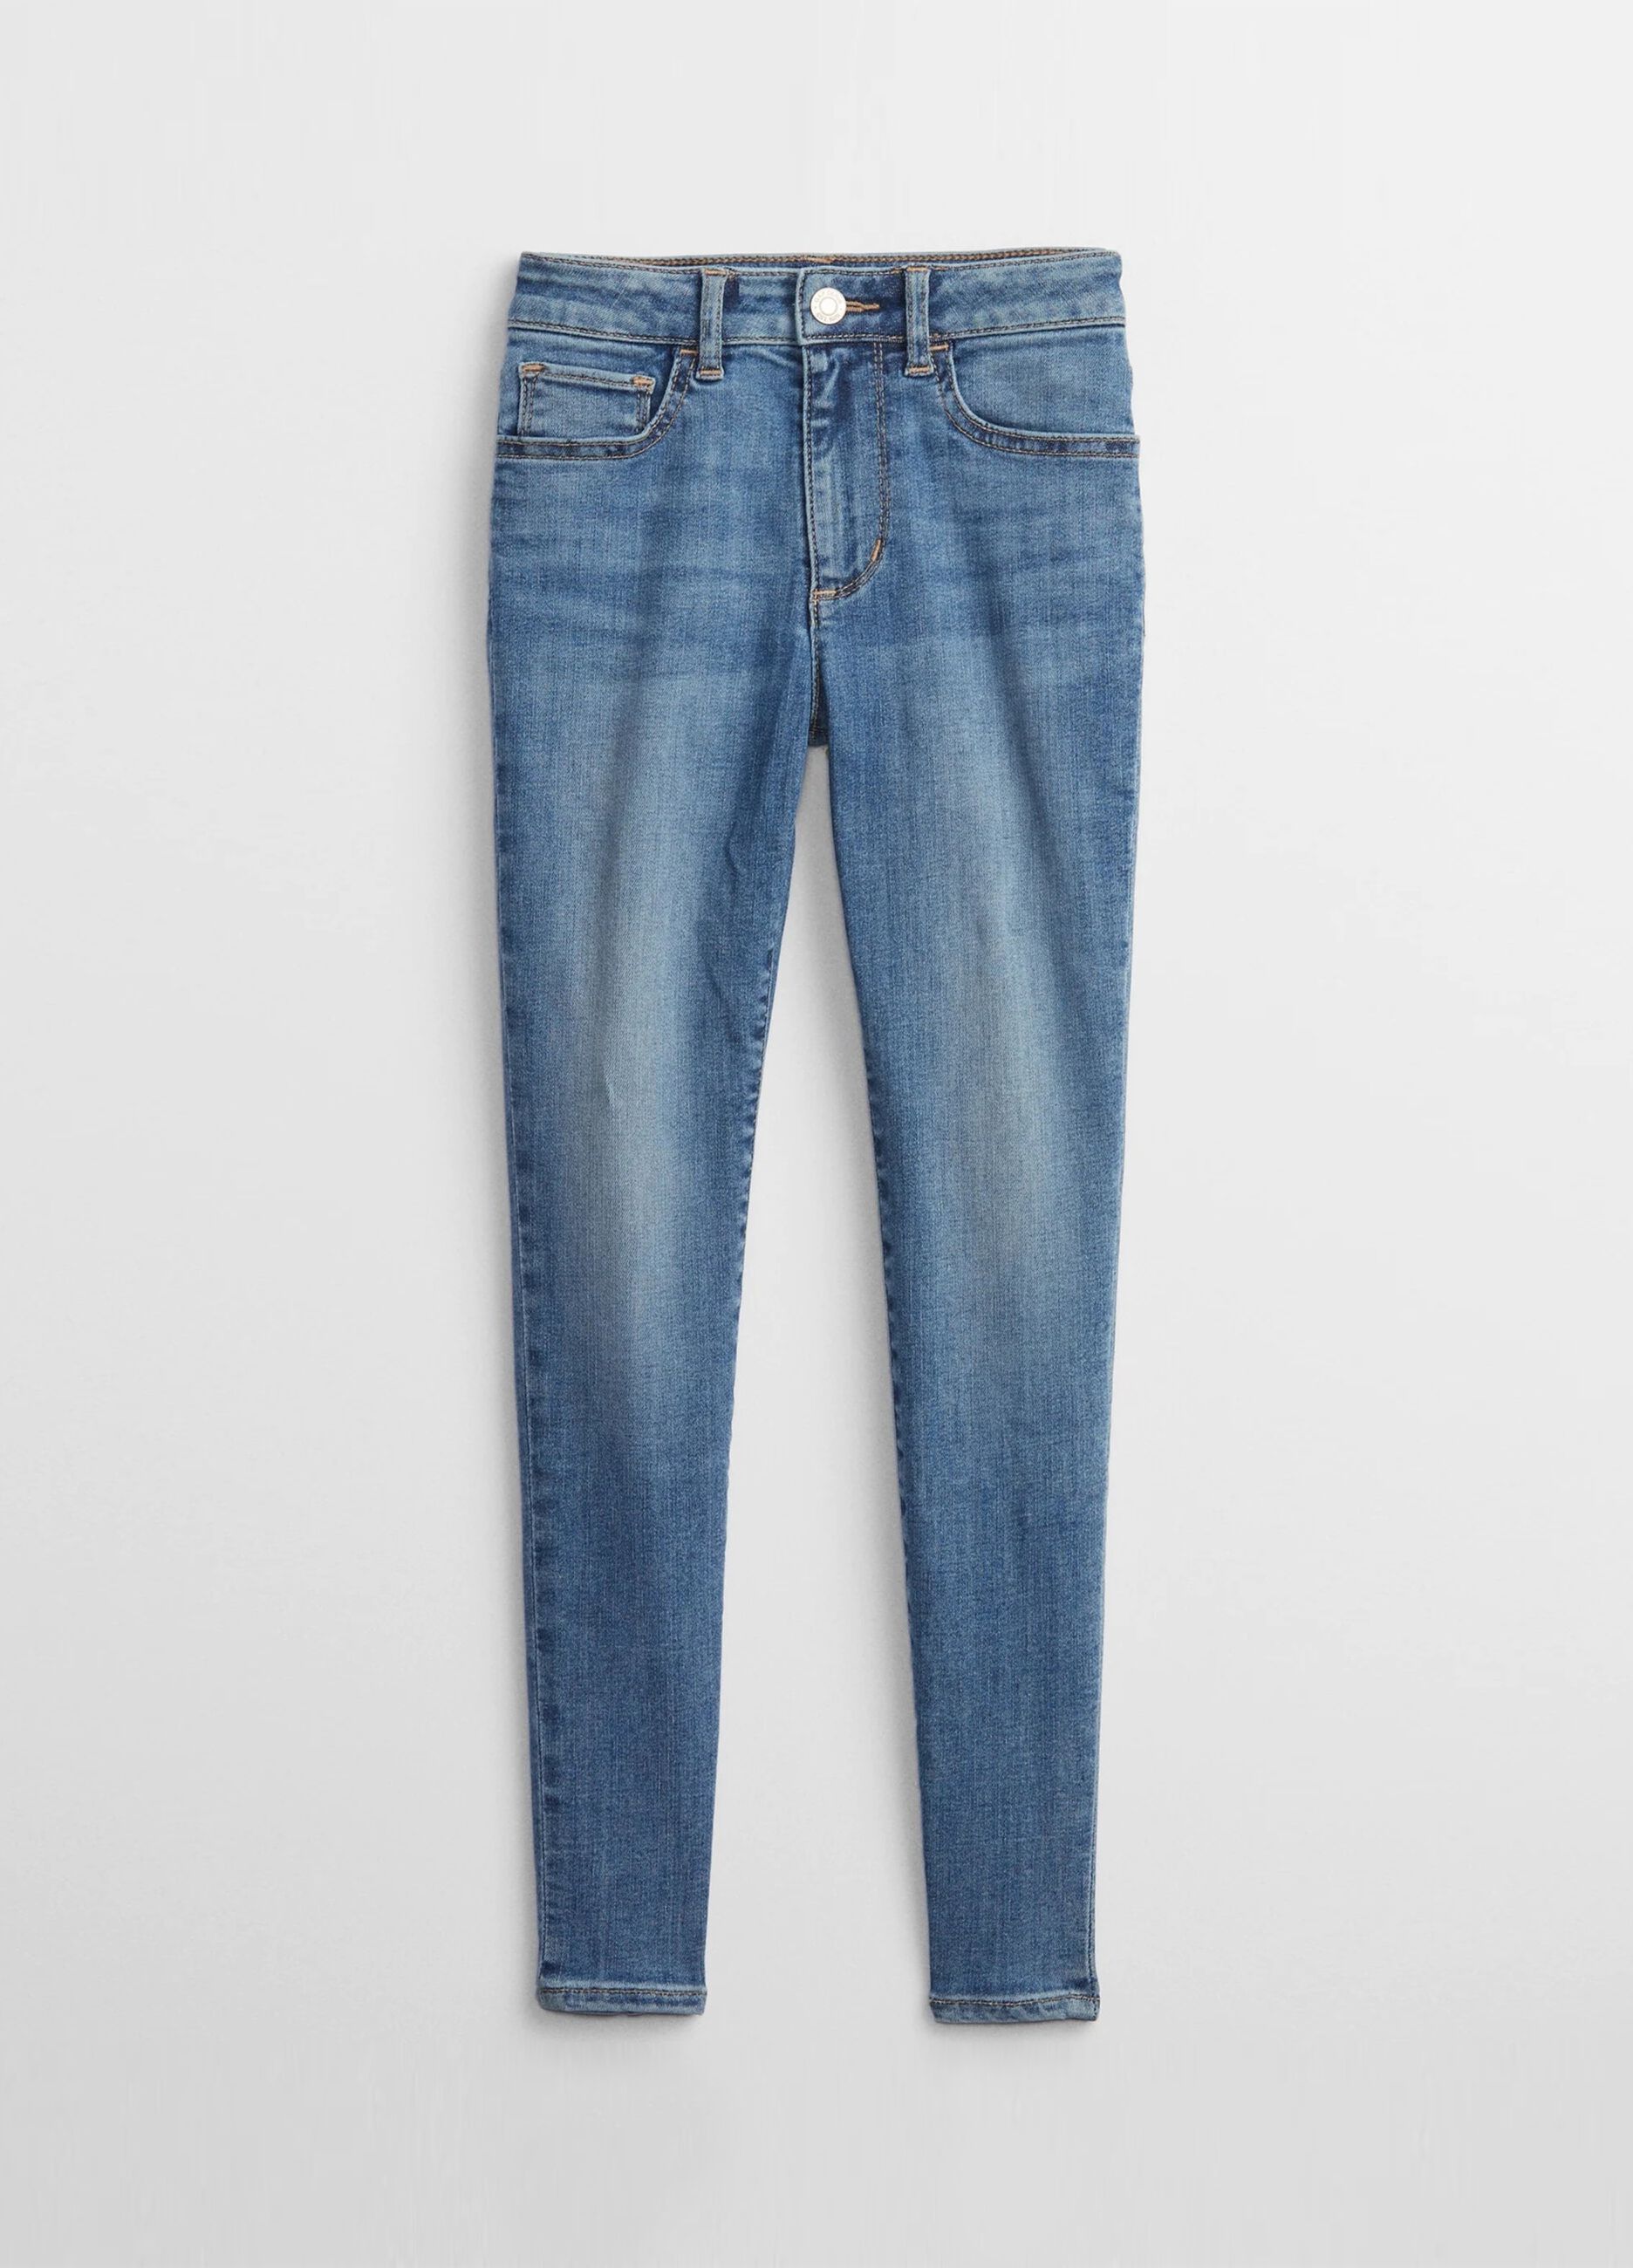 5-pocket, skinny-fit jeans.